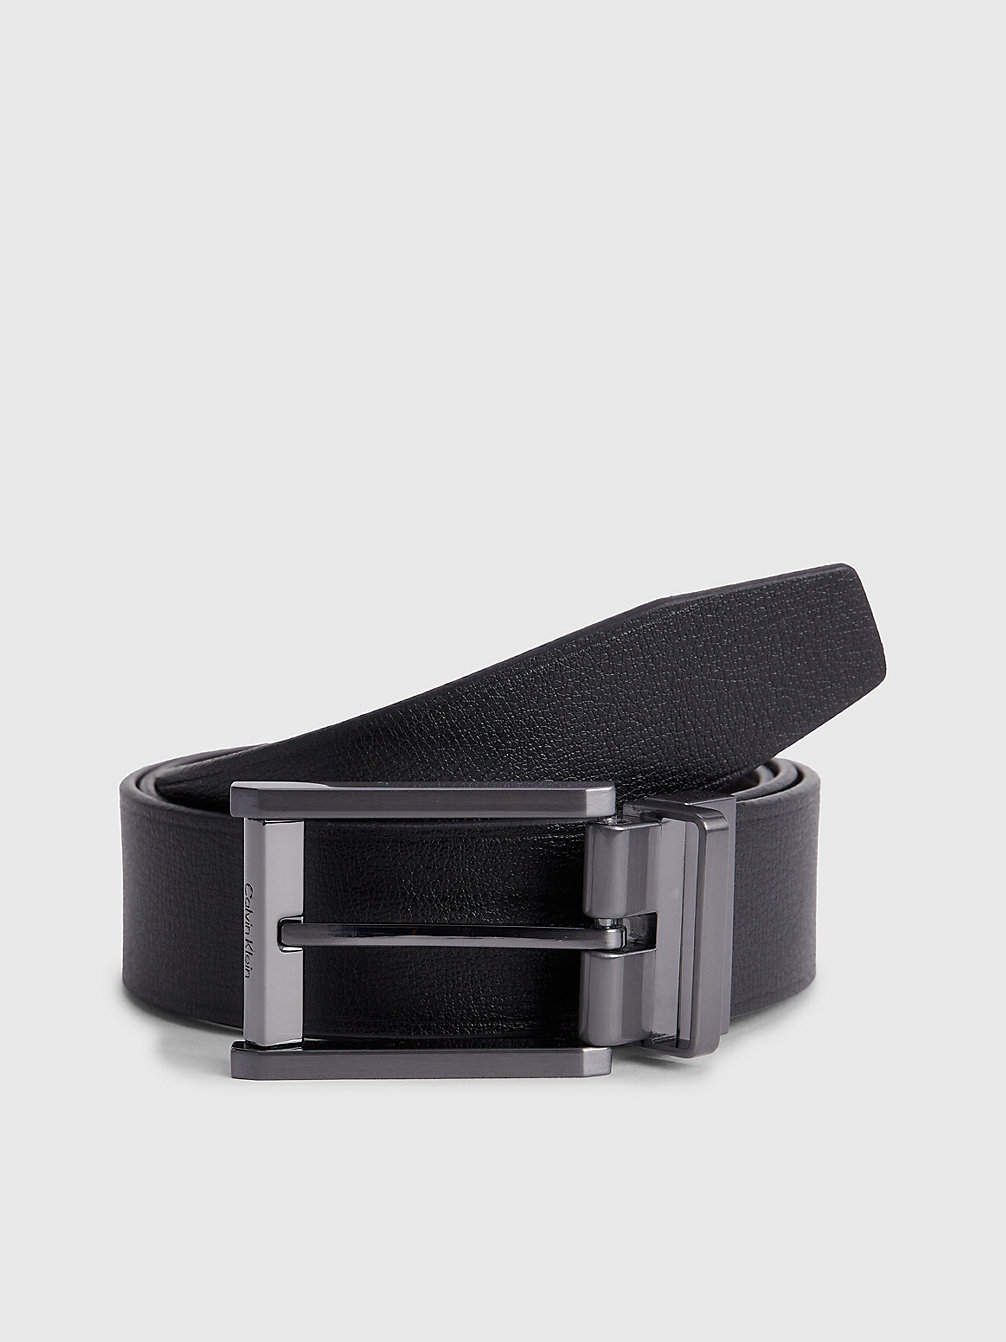 CK BLACK/DARK BROWN Reversible Leather Belt undefined men Calvin Klein